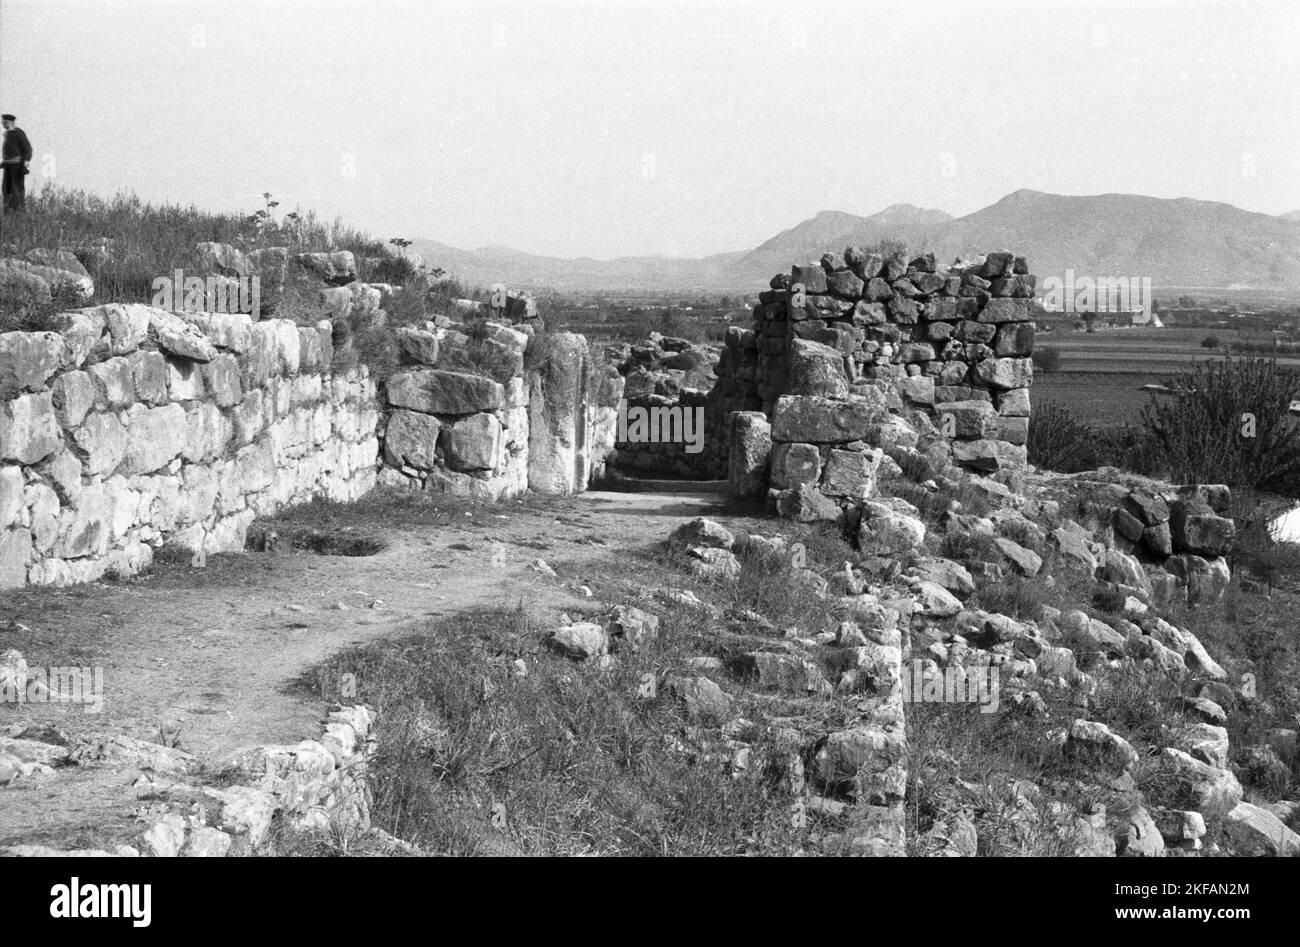 Wachturm als Überrest des antiken Mykene, Griechenland 1950er Jahre. Ein Wachturm als Resten der antiken Mykene, Griechenland, 1950s. Stockfoto